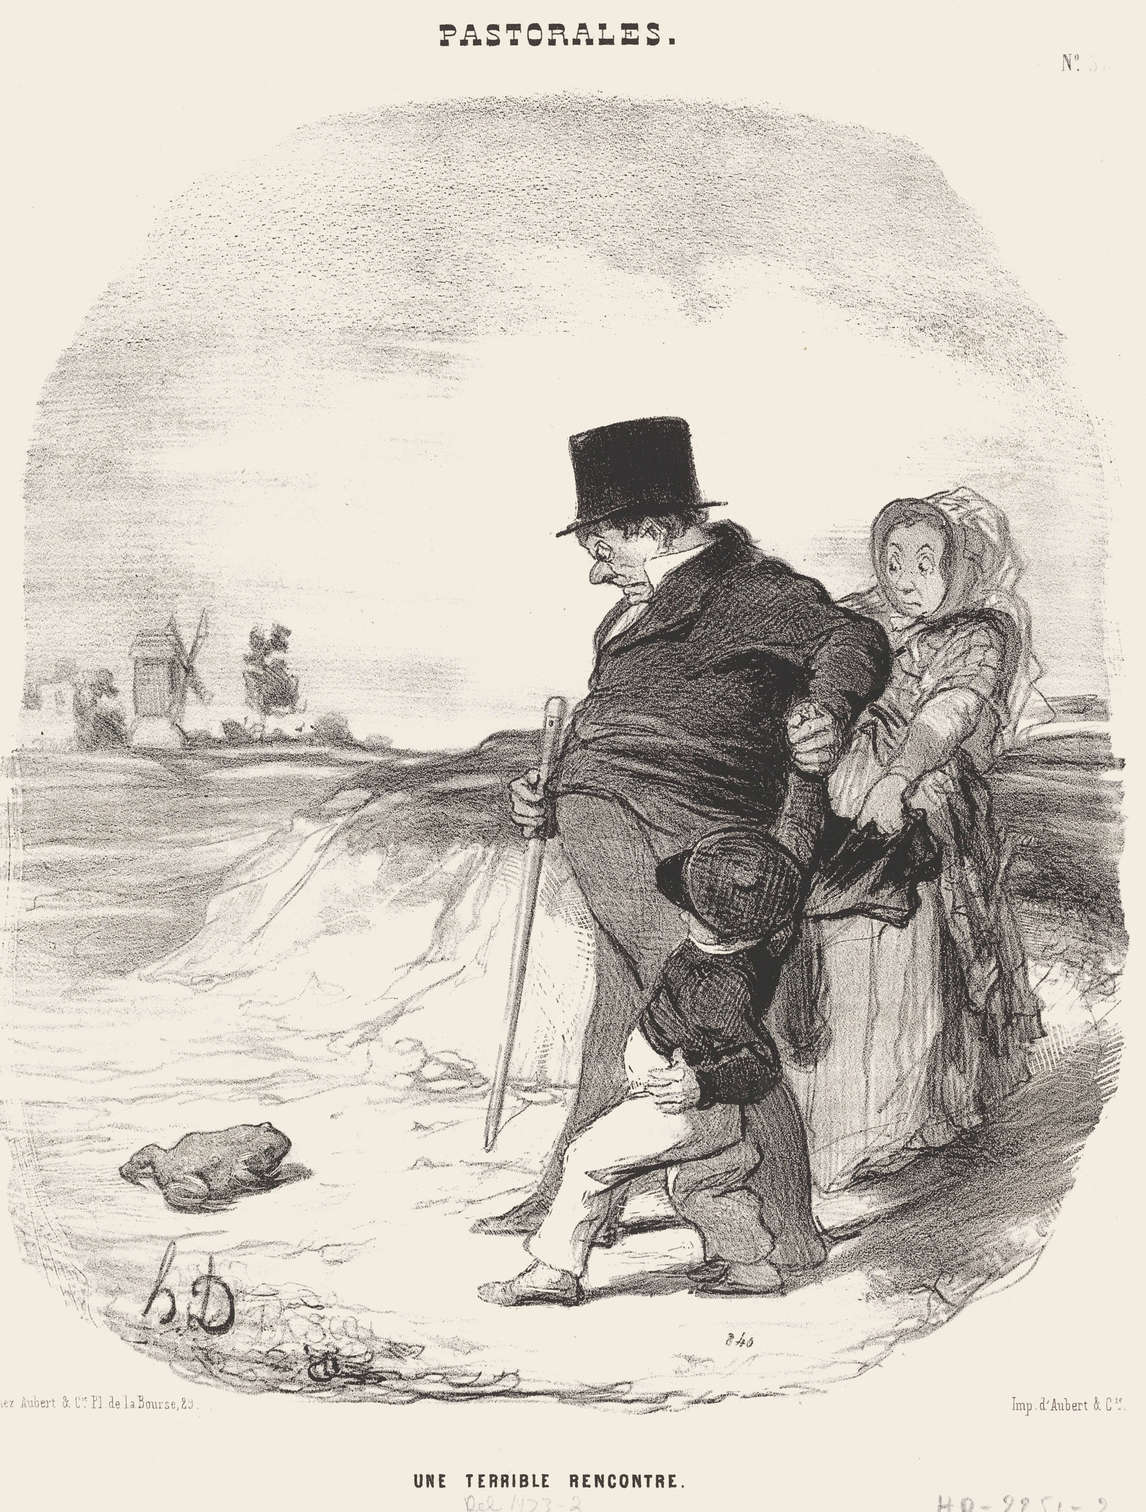 Honoré Daumier, Une terrible rencontre, 1845